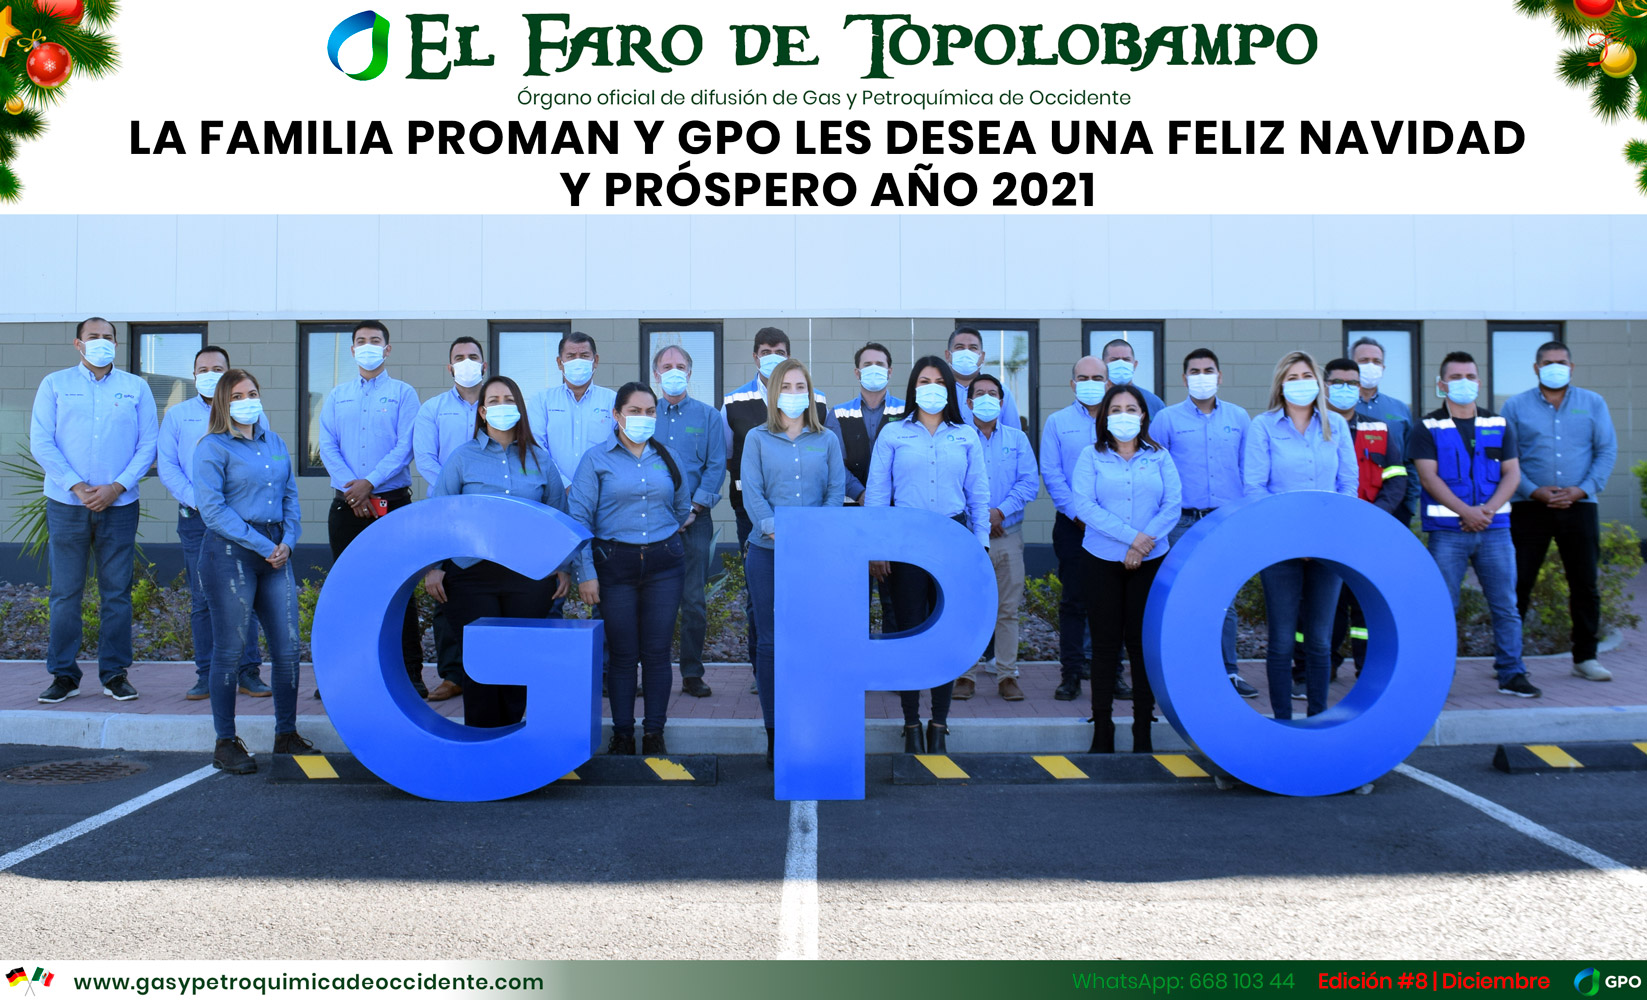 GPO - El Faro de Topolobampo - A - Español - Diciembre 2020